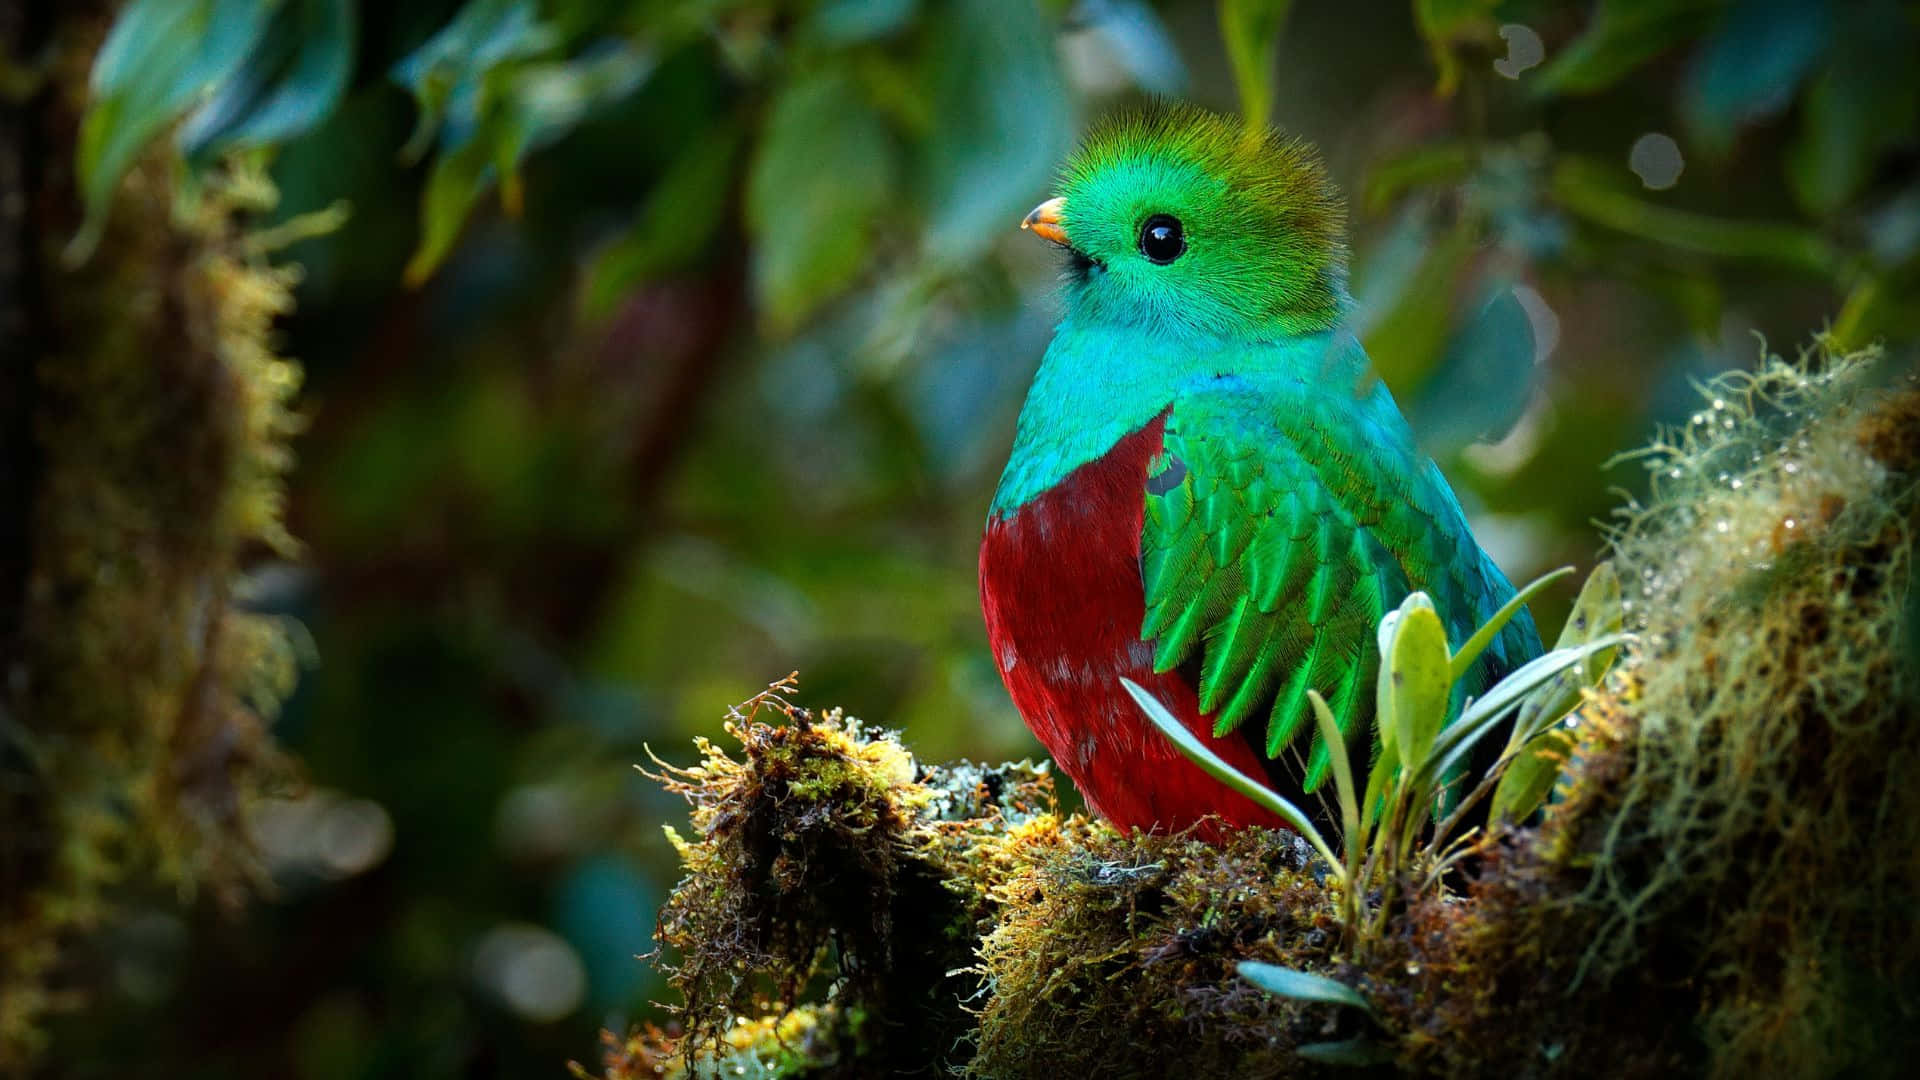 Vibrant Quetzalin Natural Habitat Wallpaper